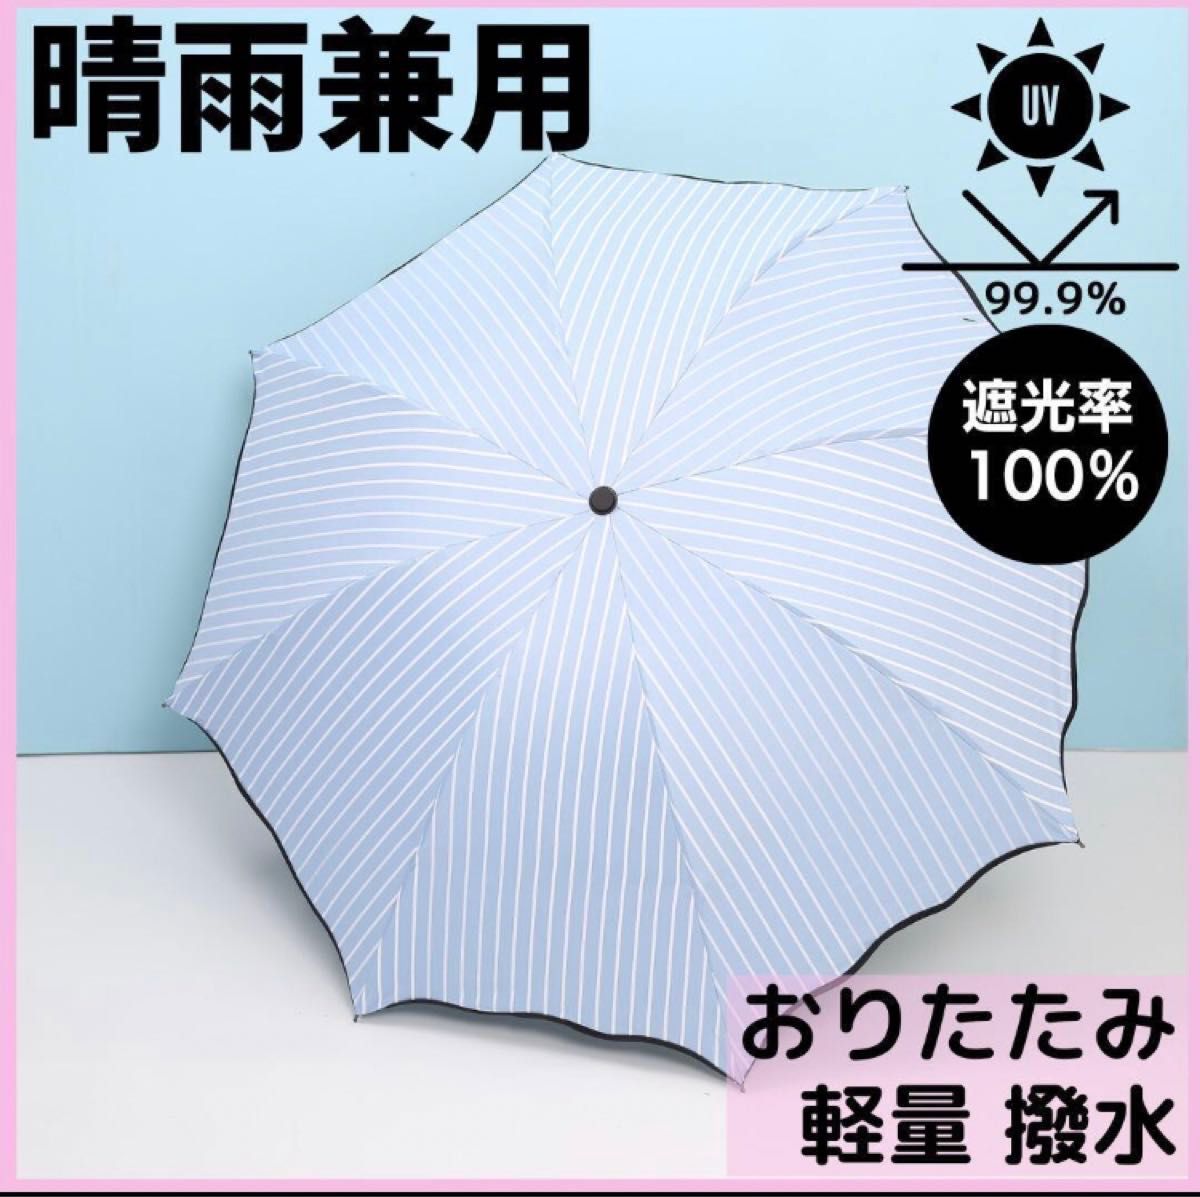 2本セット★ストライプ 日傘 完全遮光 UVカット 晴雨兼用 折りたたみ傘 軽量 白 黒 遮光 撥水加工 紫外線対策 ピンク 水色